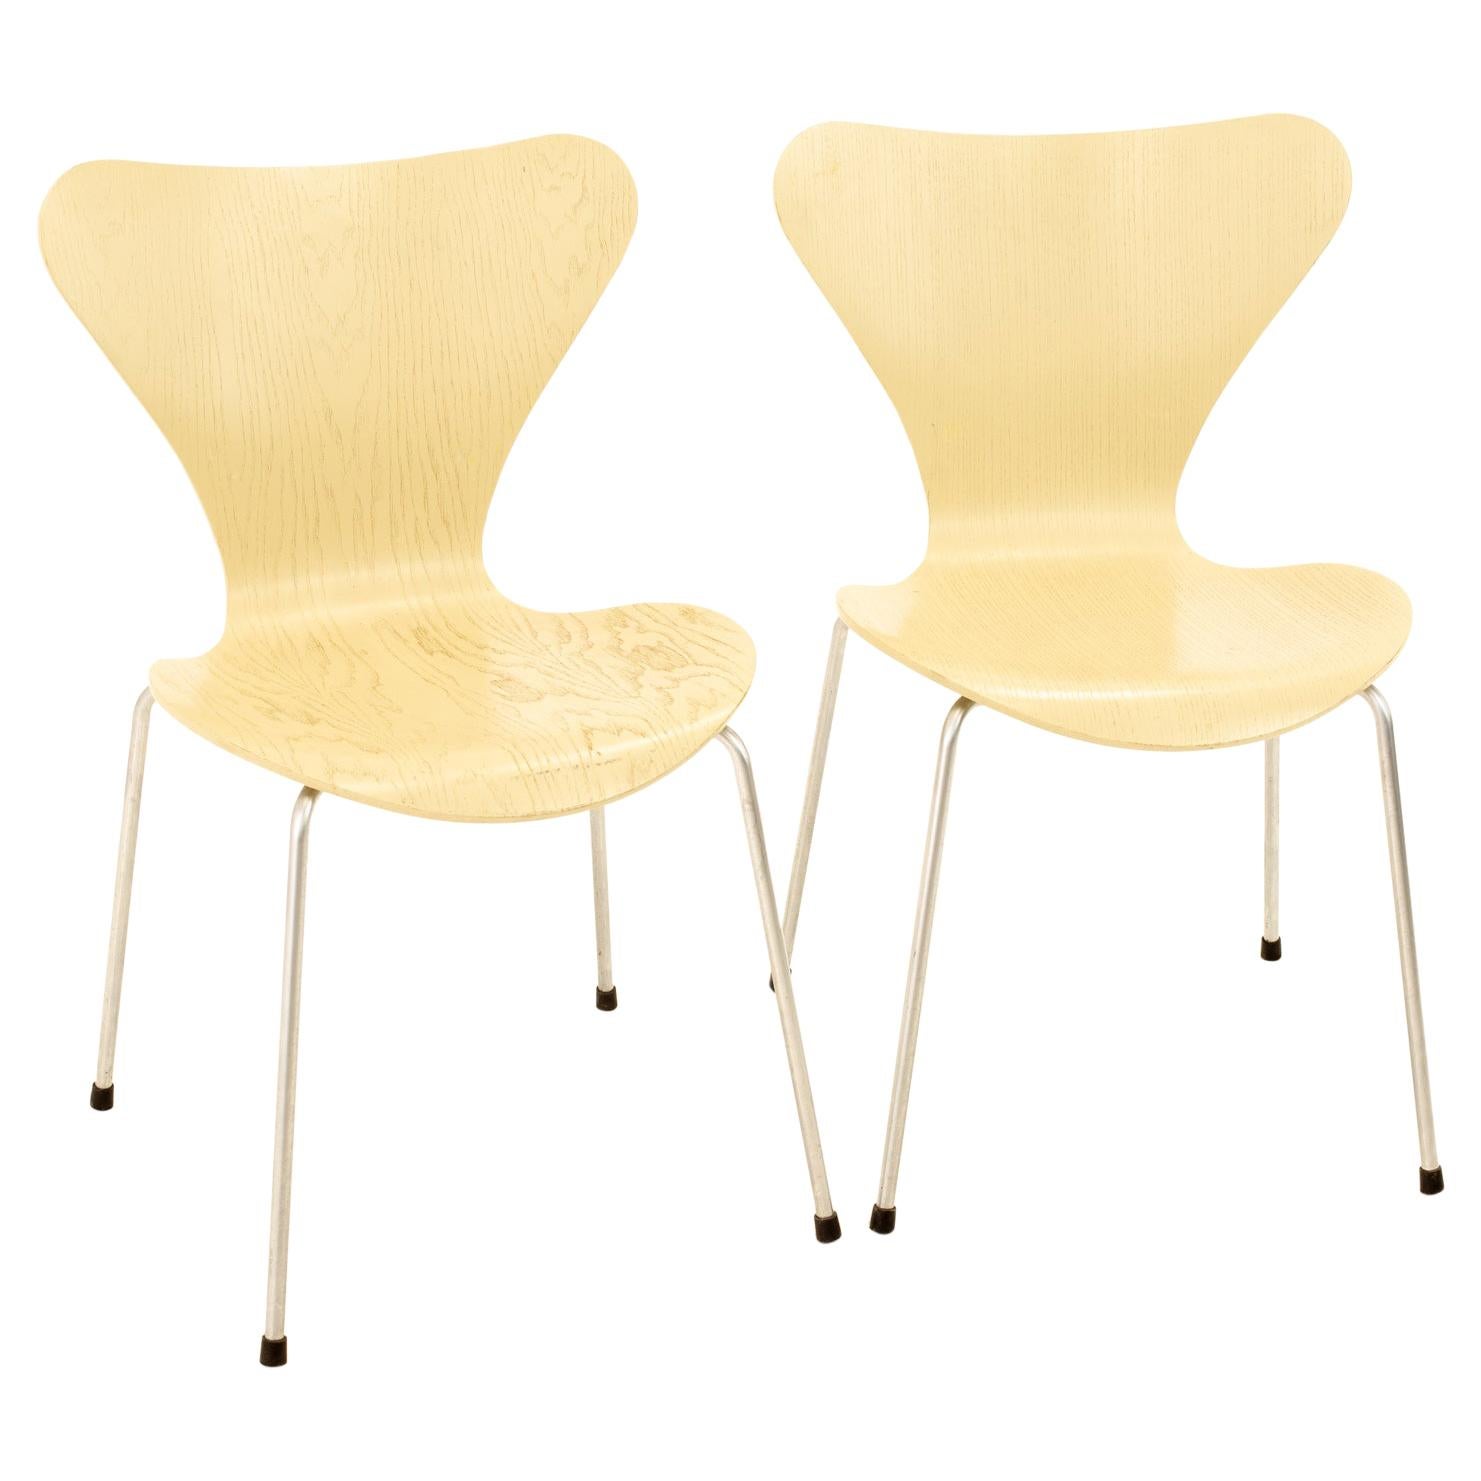 Arne Jacobsen for Fritz Hansen Mid-Century Modern Series 7 Chair, Set of 2